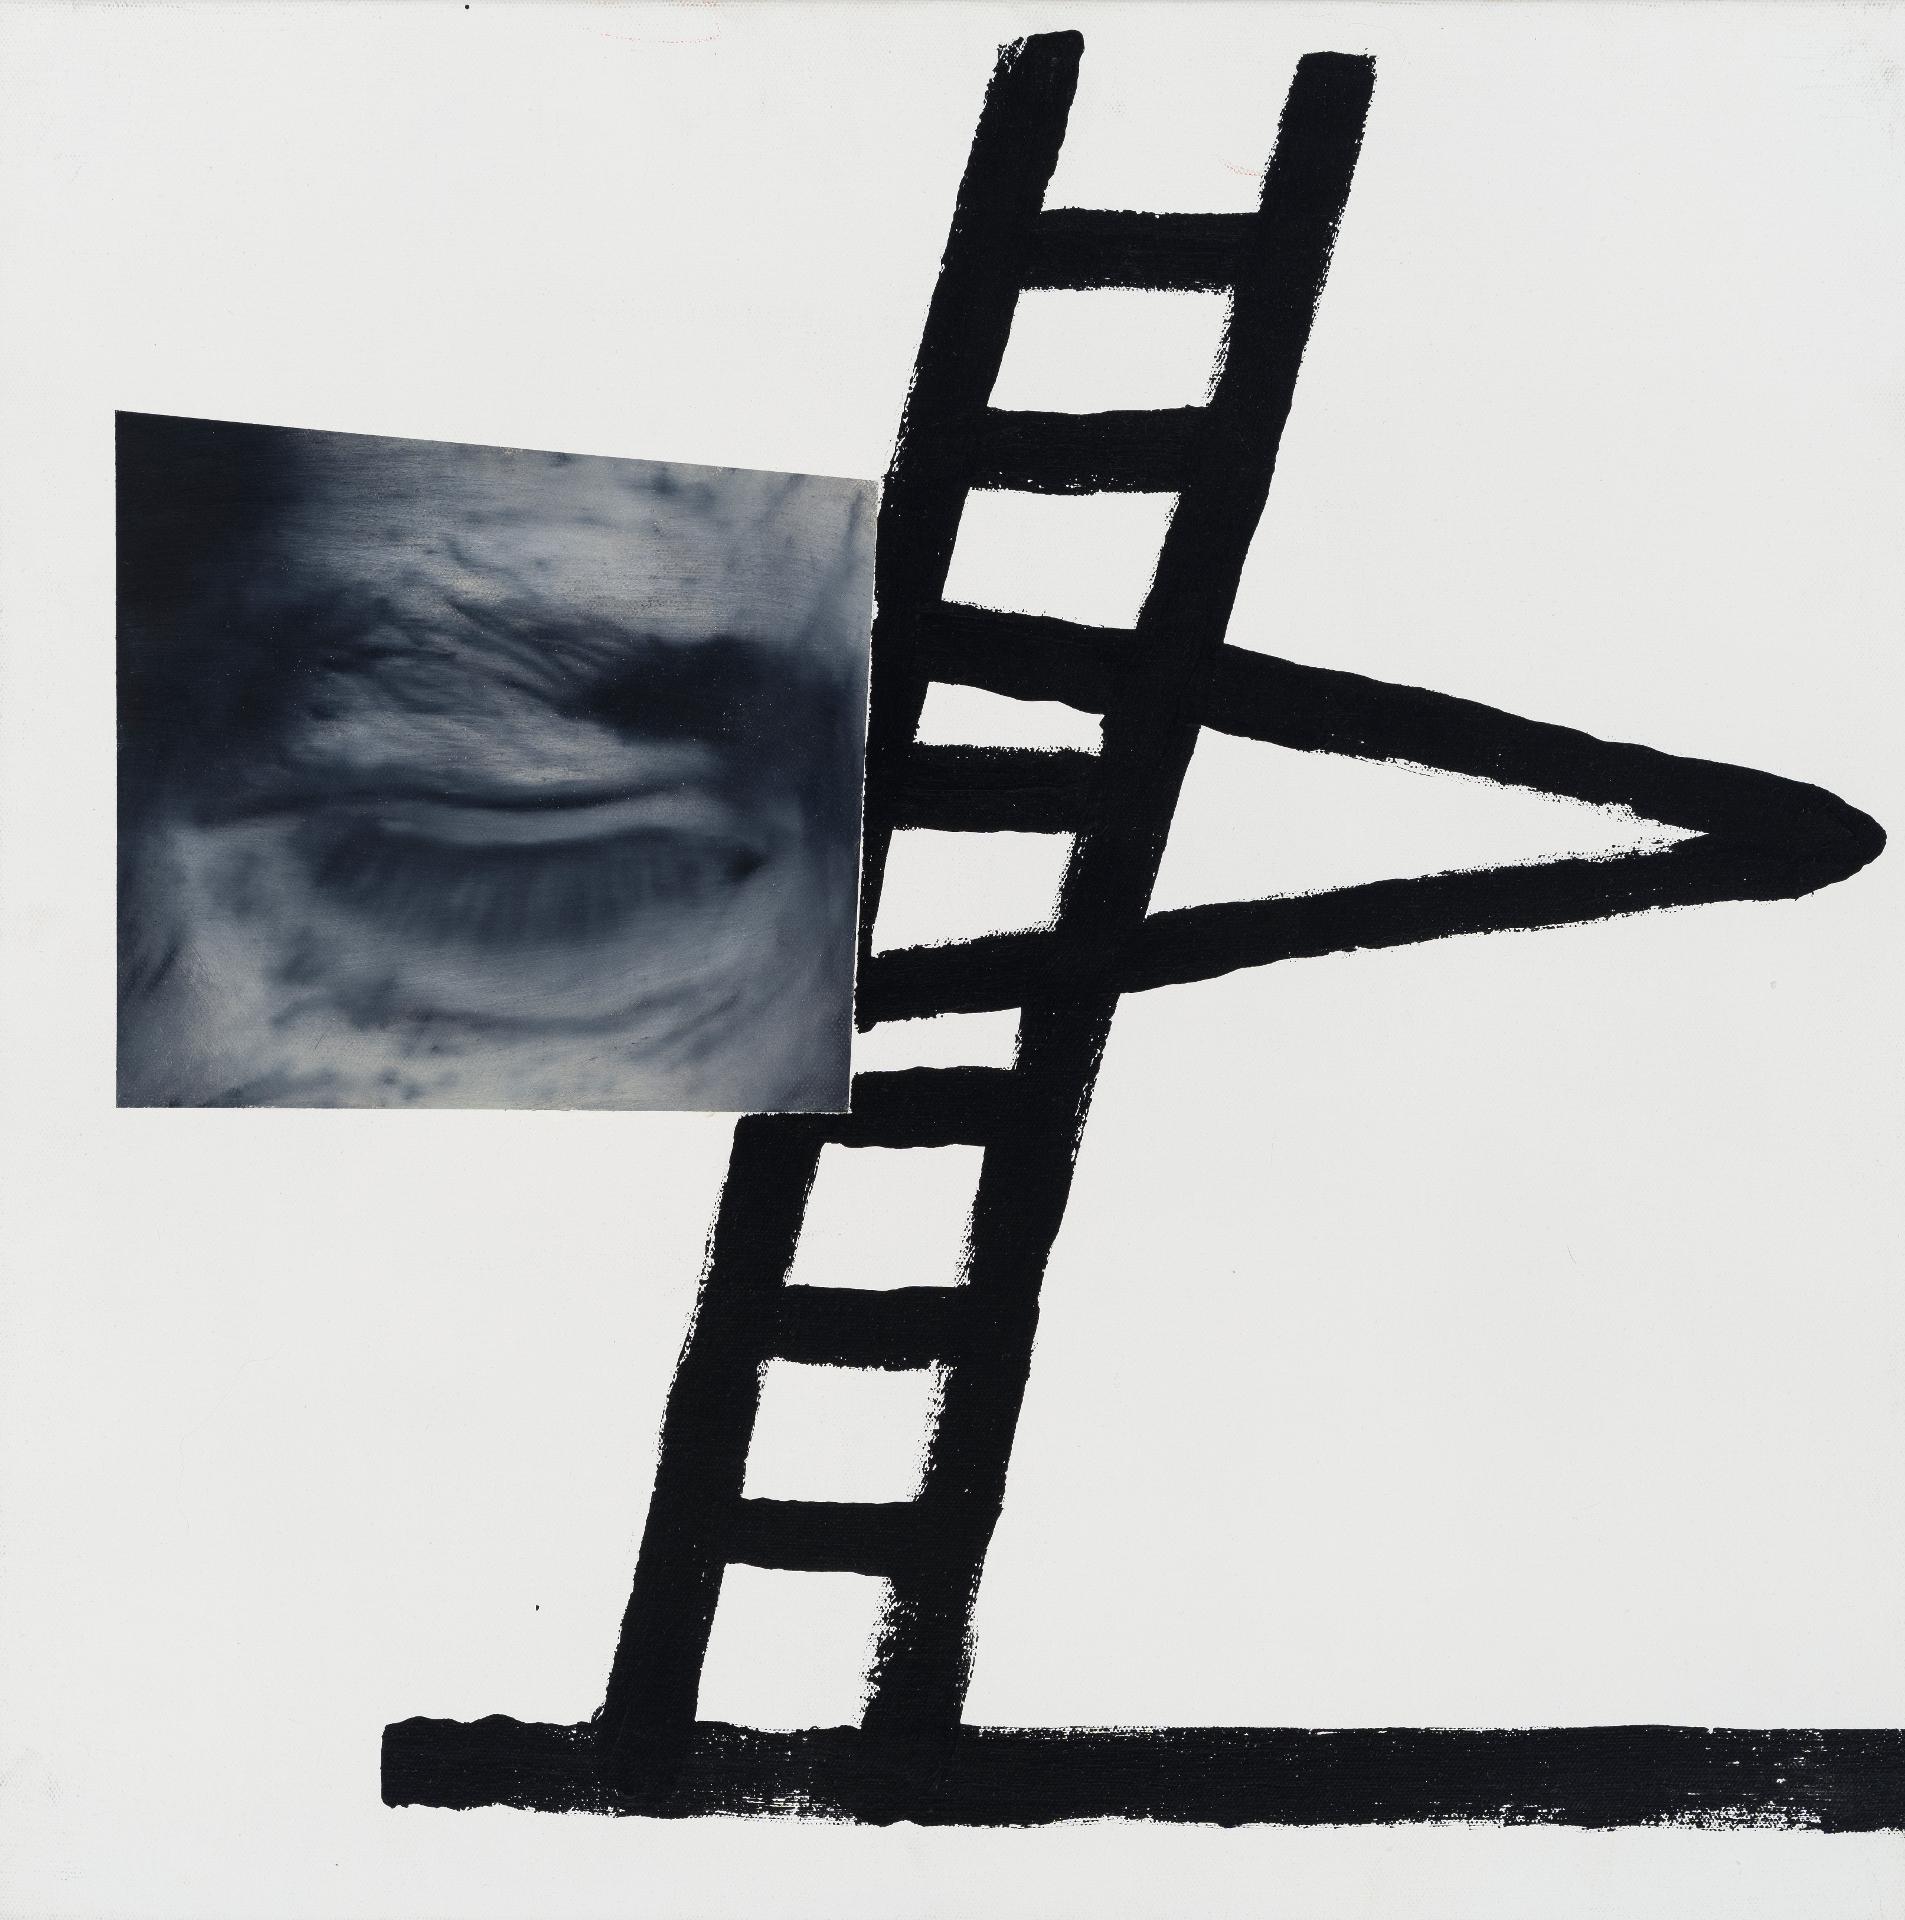 David Elliott - Ladder, 1999